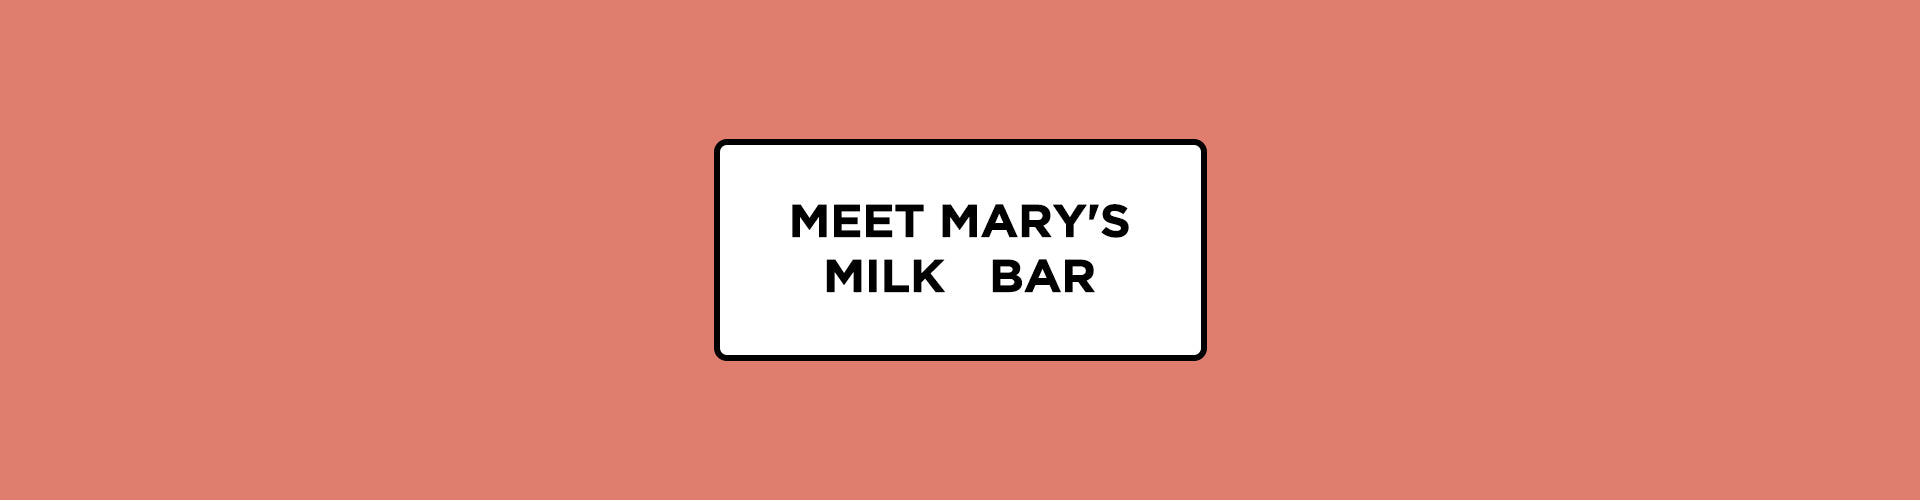 Meet: Mary's Milk Bar